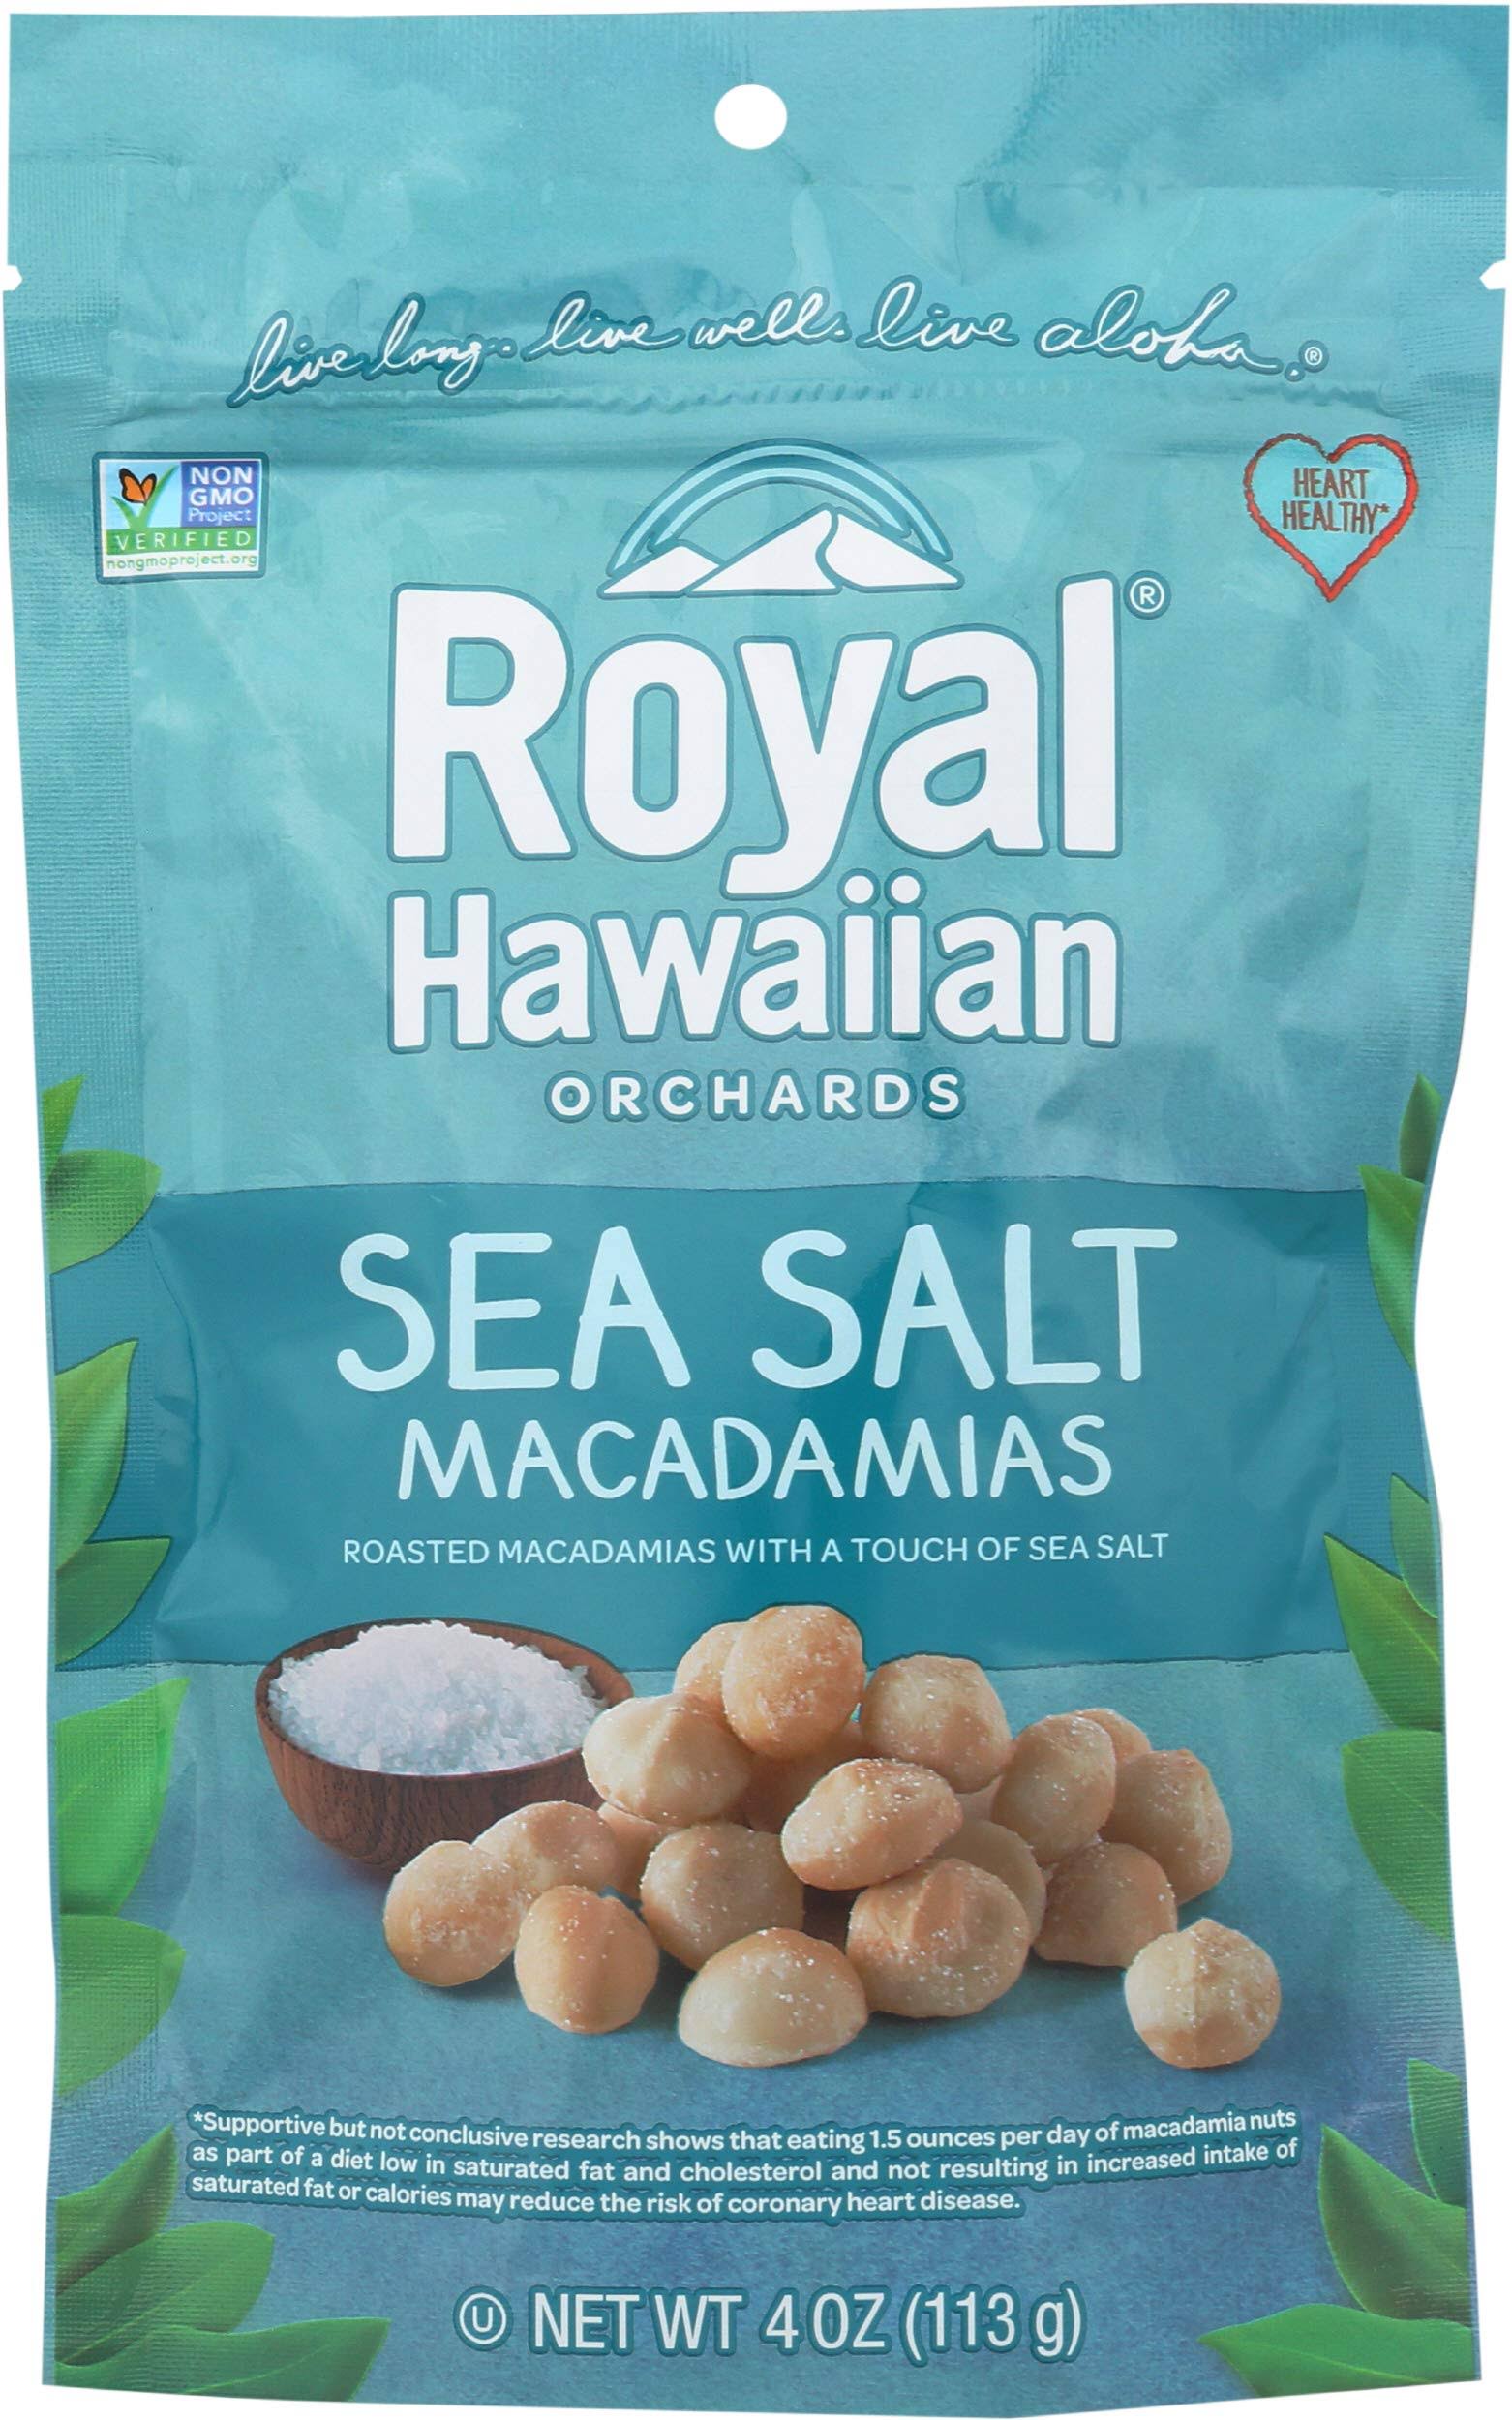 Royal Hawaiian Macadamias - Sea Salt